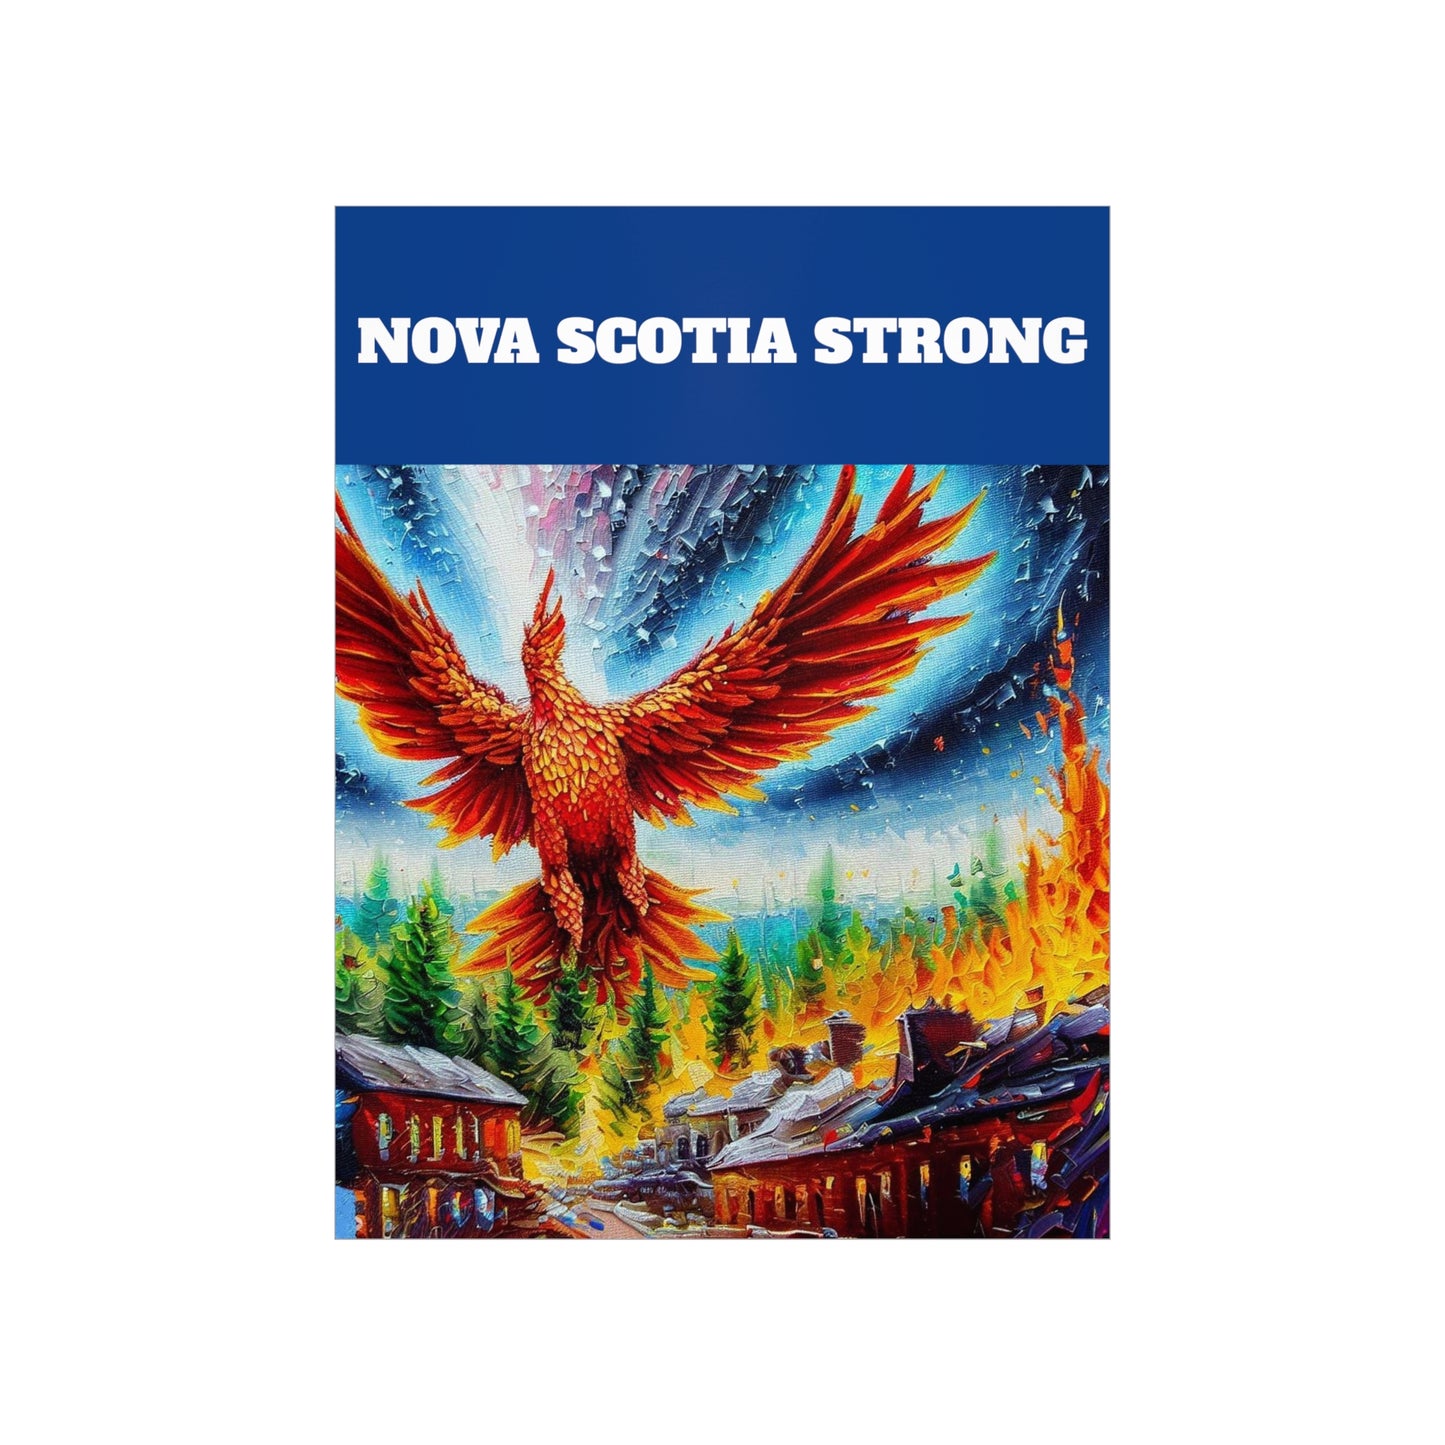 Unique Vintage Wall Art Poster - Premium Matte Vertical Vintage Nova Scotia Strong Phoenix Rising Poster